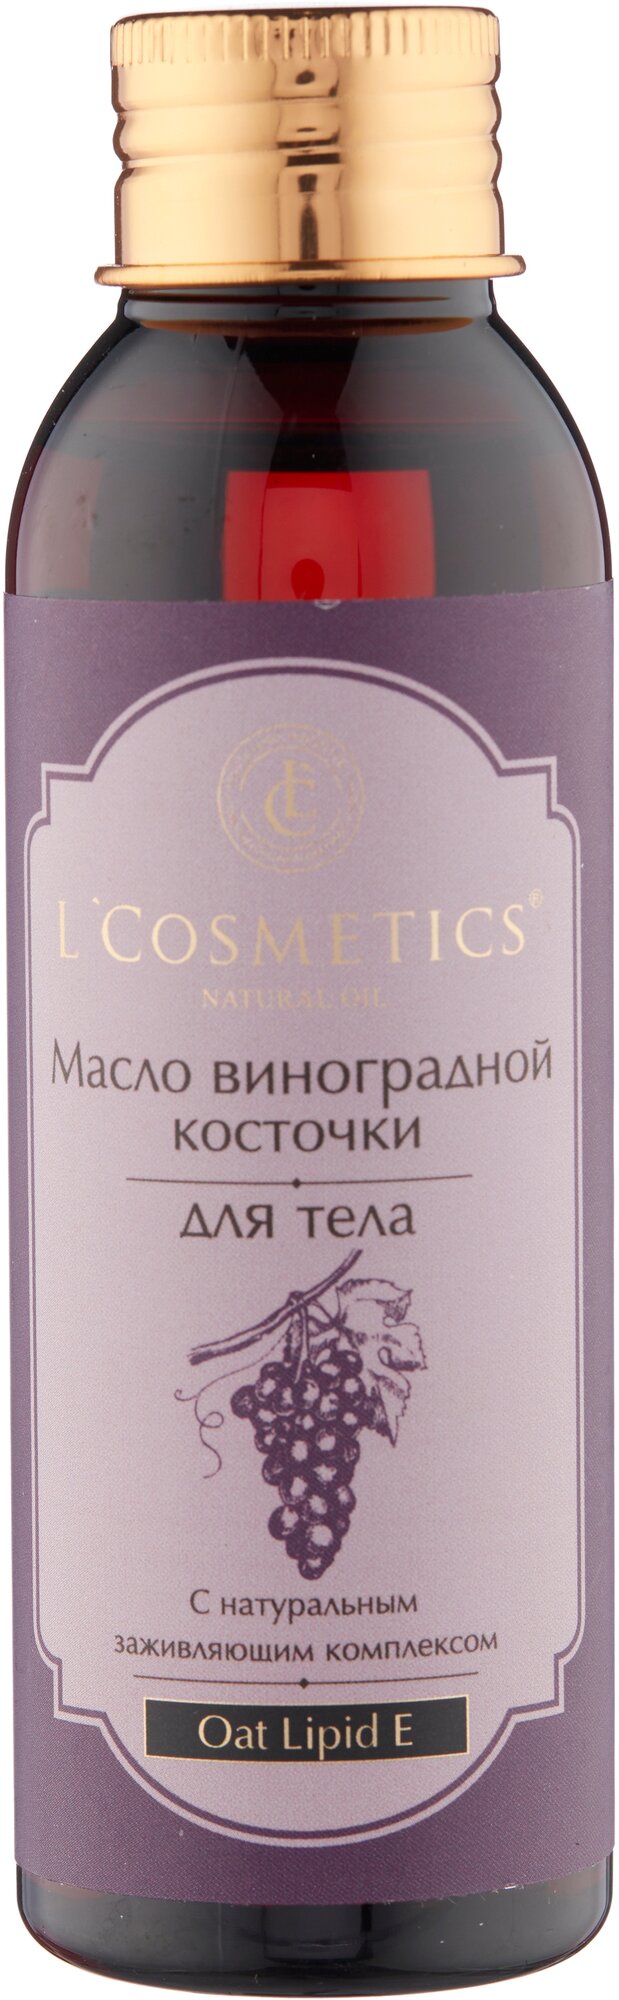 L'Cosmetics Масло виноградной косточки для тела с натуральным заживляющим комплексом, 100 мл